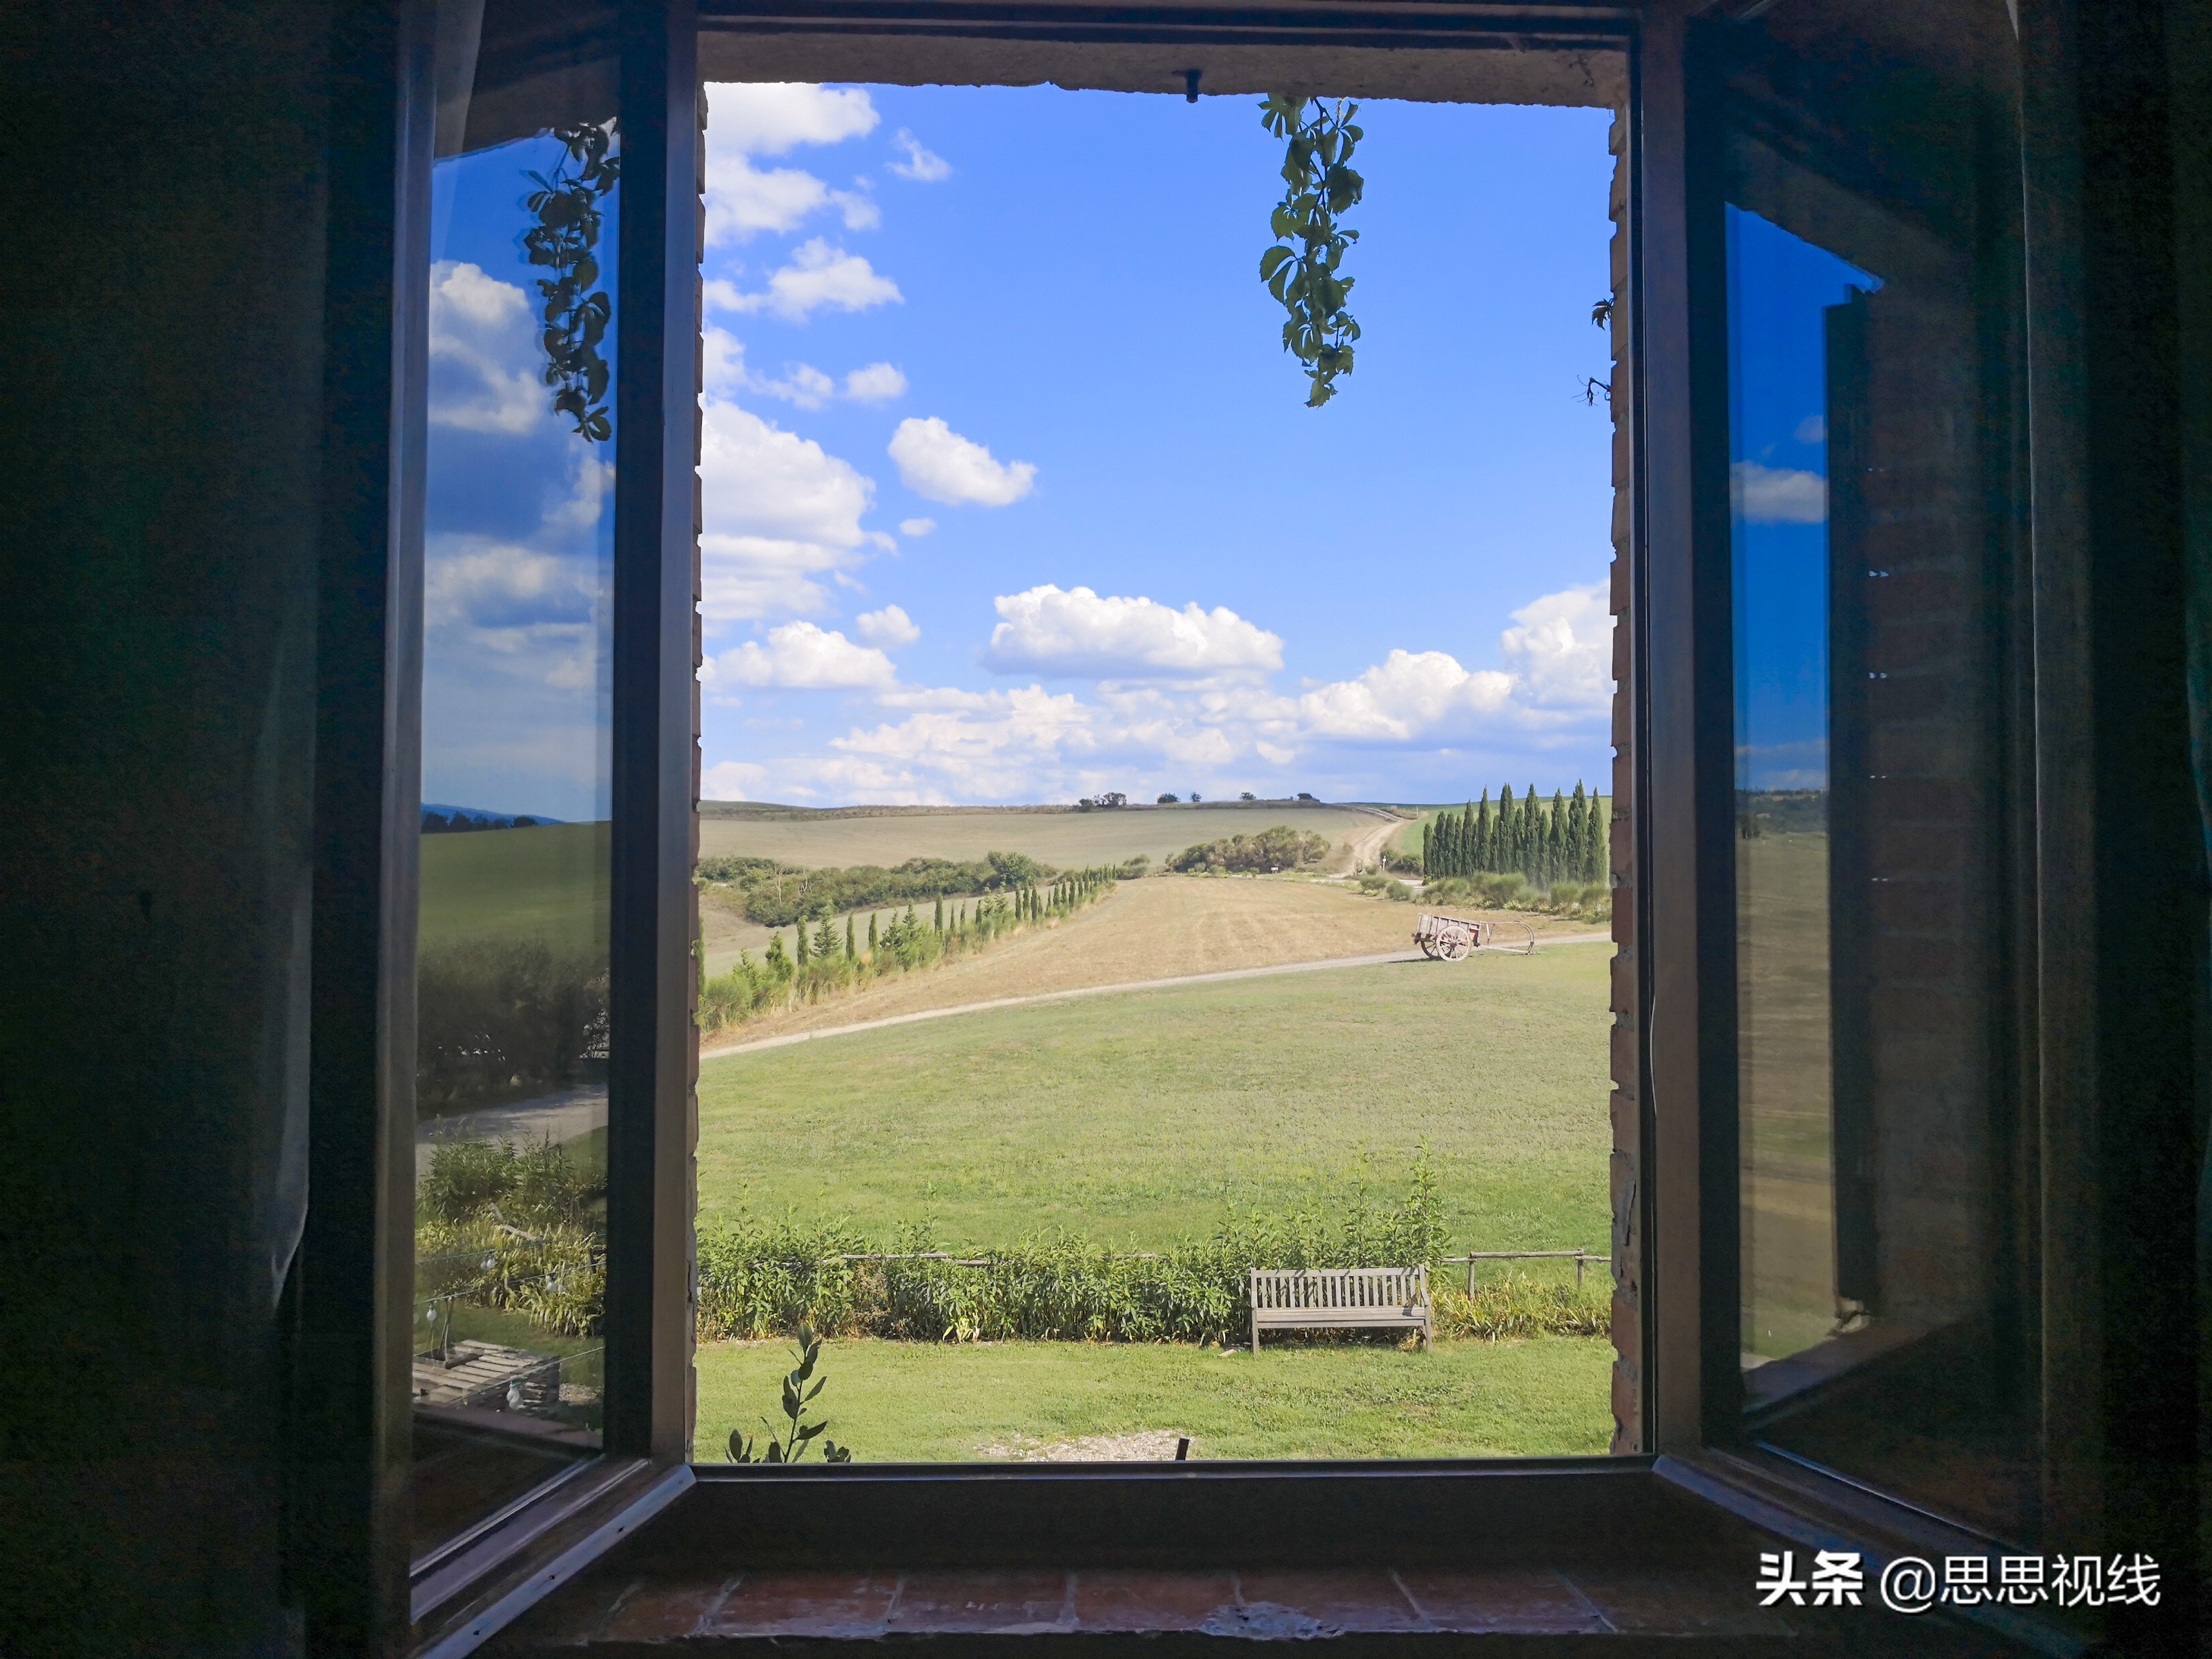 隆科托斯卡纳(艳阳下的托斯卡纳,推窗可见风景的农庄)